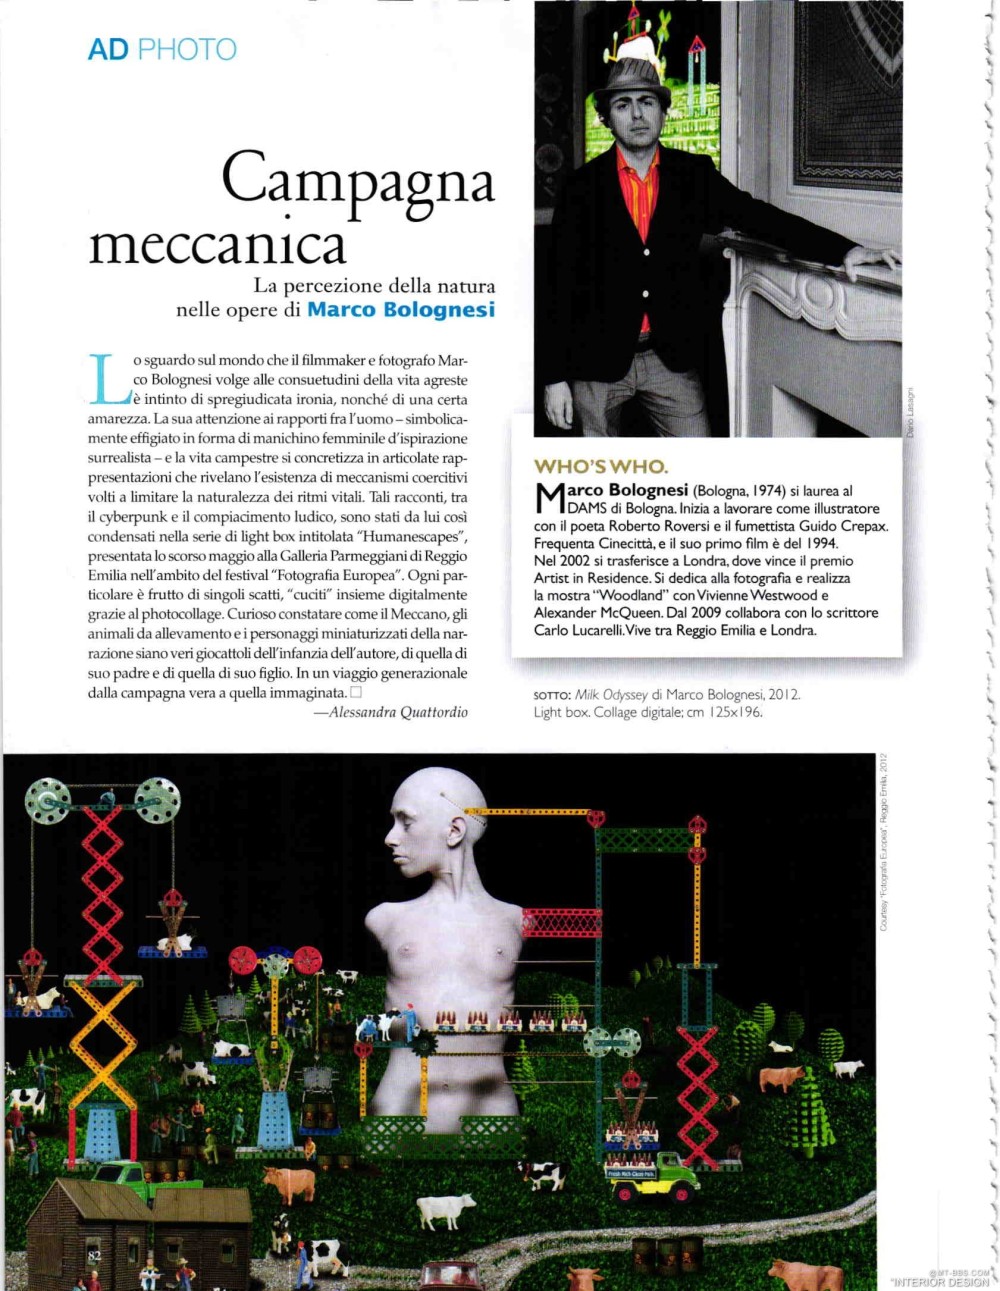 意大利AD 杂志 2012年全年JPG高清版本 全免（上传完毕）_0084.jpg